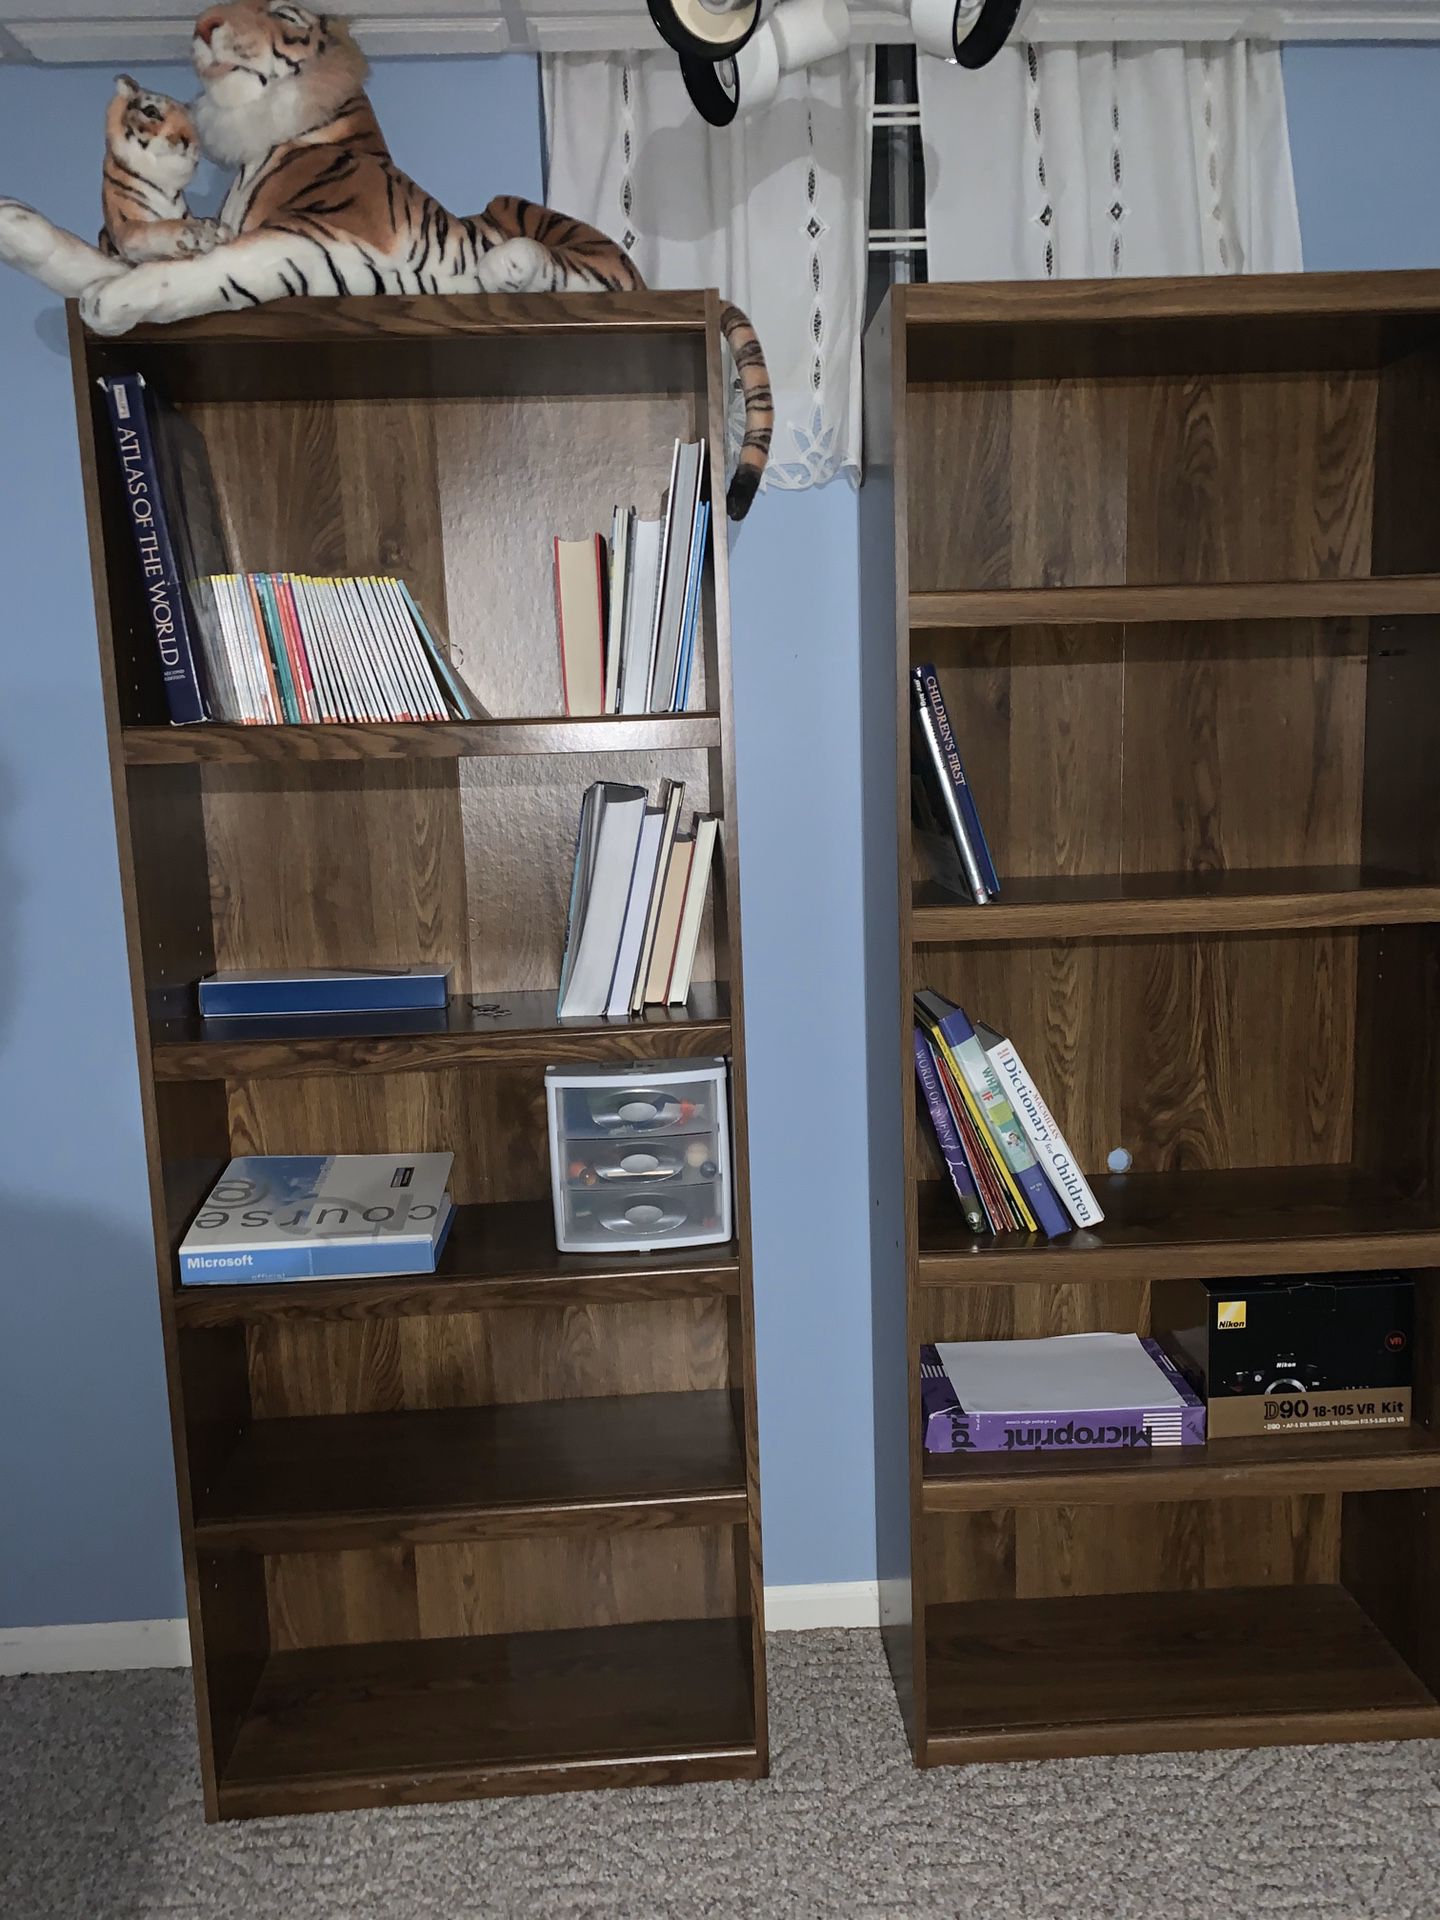 2 book shelves